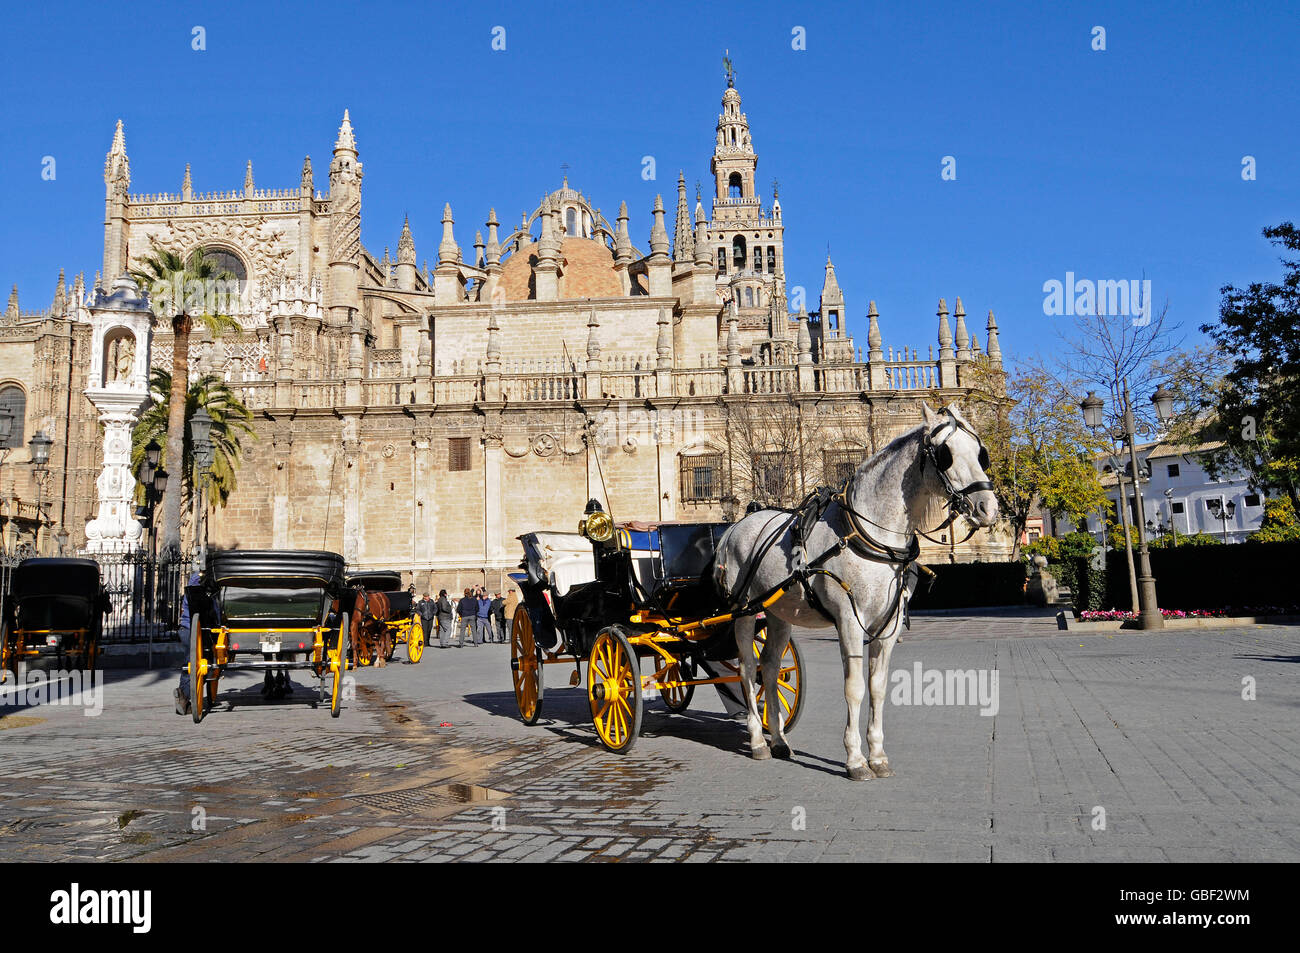 Pferd und Wagen, Plaza del Triunfo Quadrat, Kathedrale Santa Maria De La Sede, Sevilla, Sevilla Provinz, Andalusien, Spanien, Europa Stockfoto